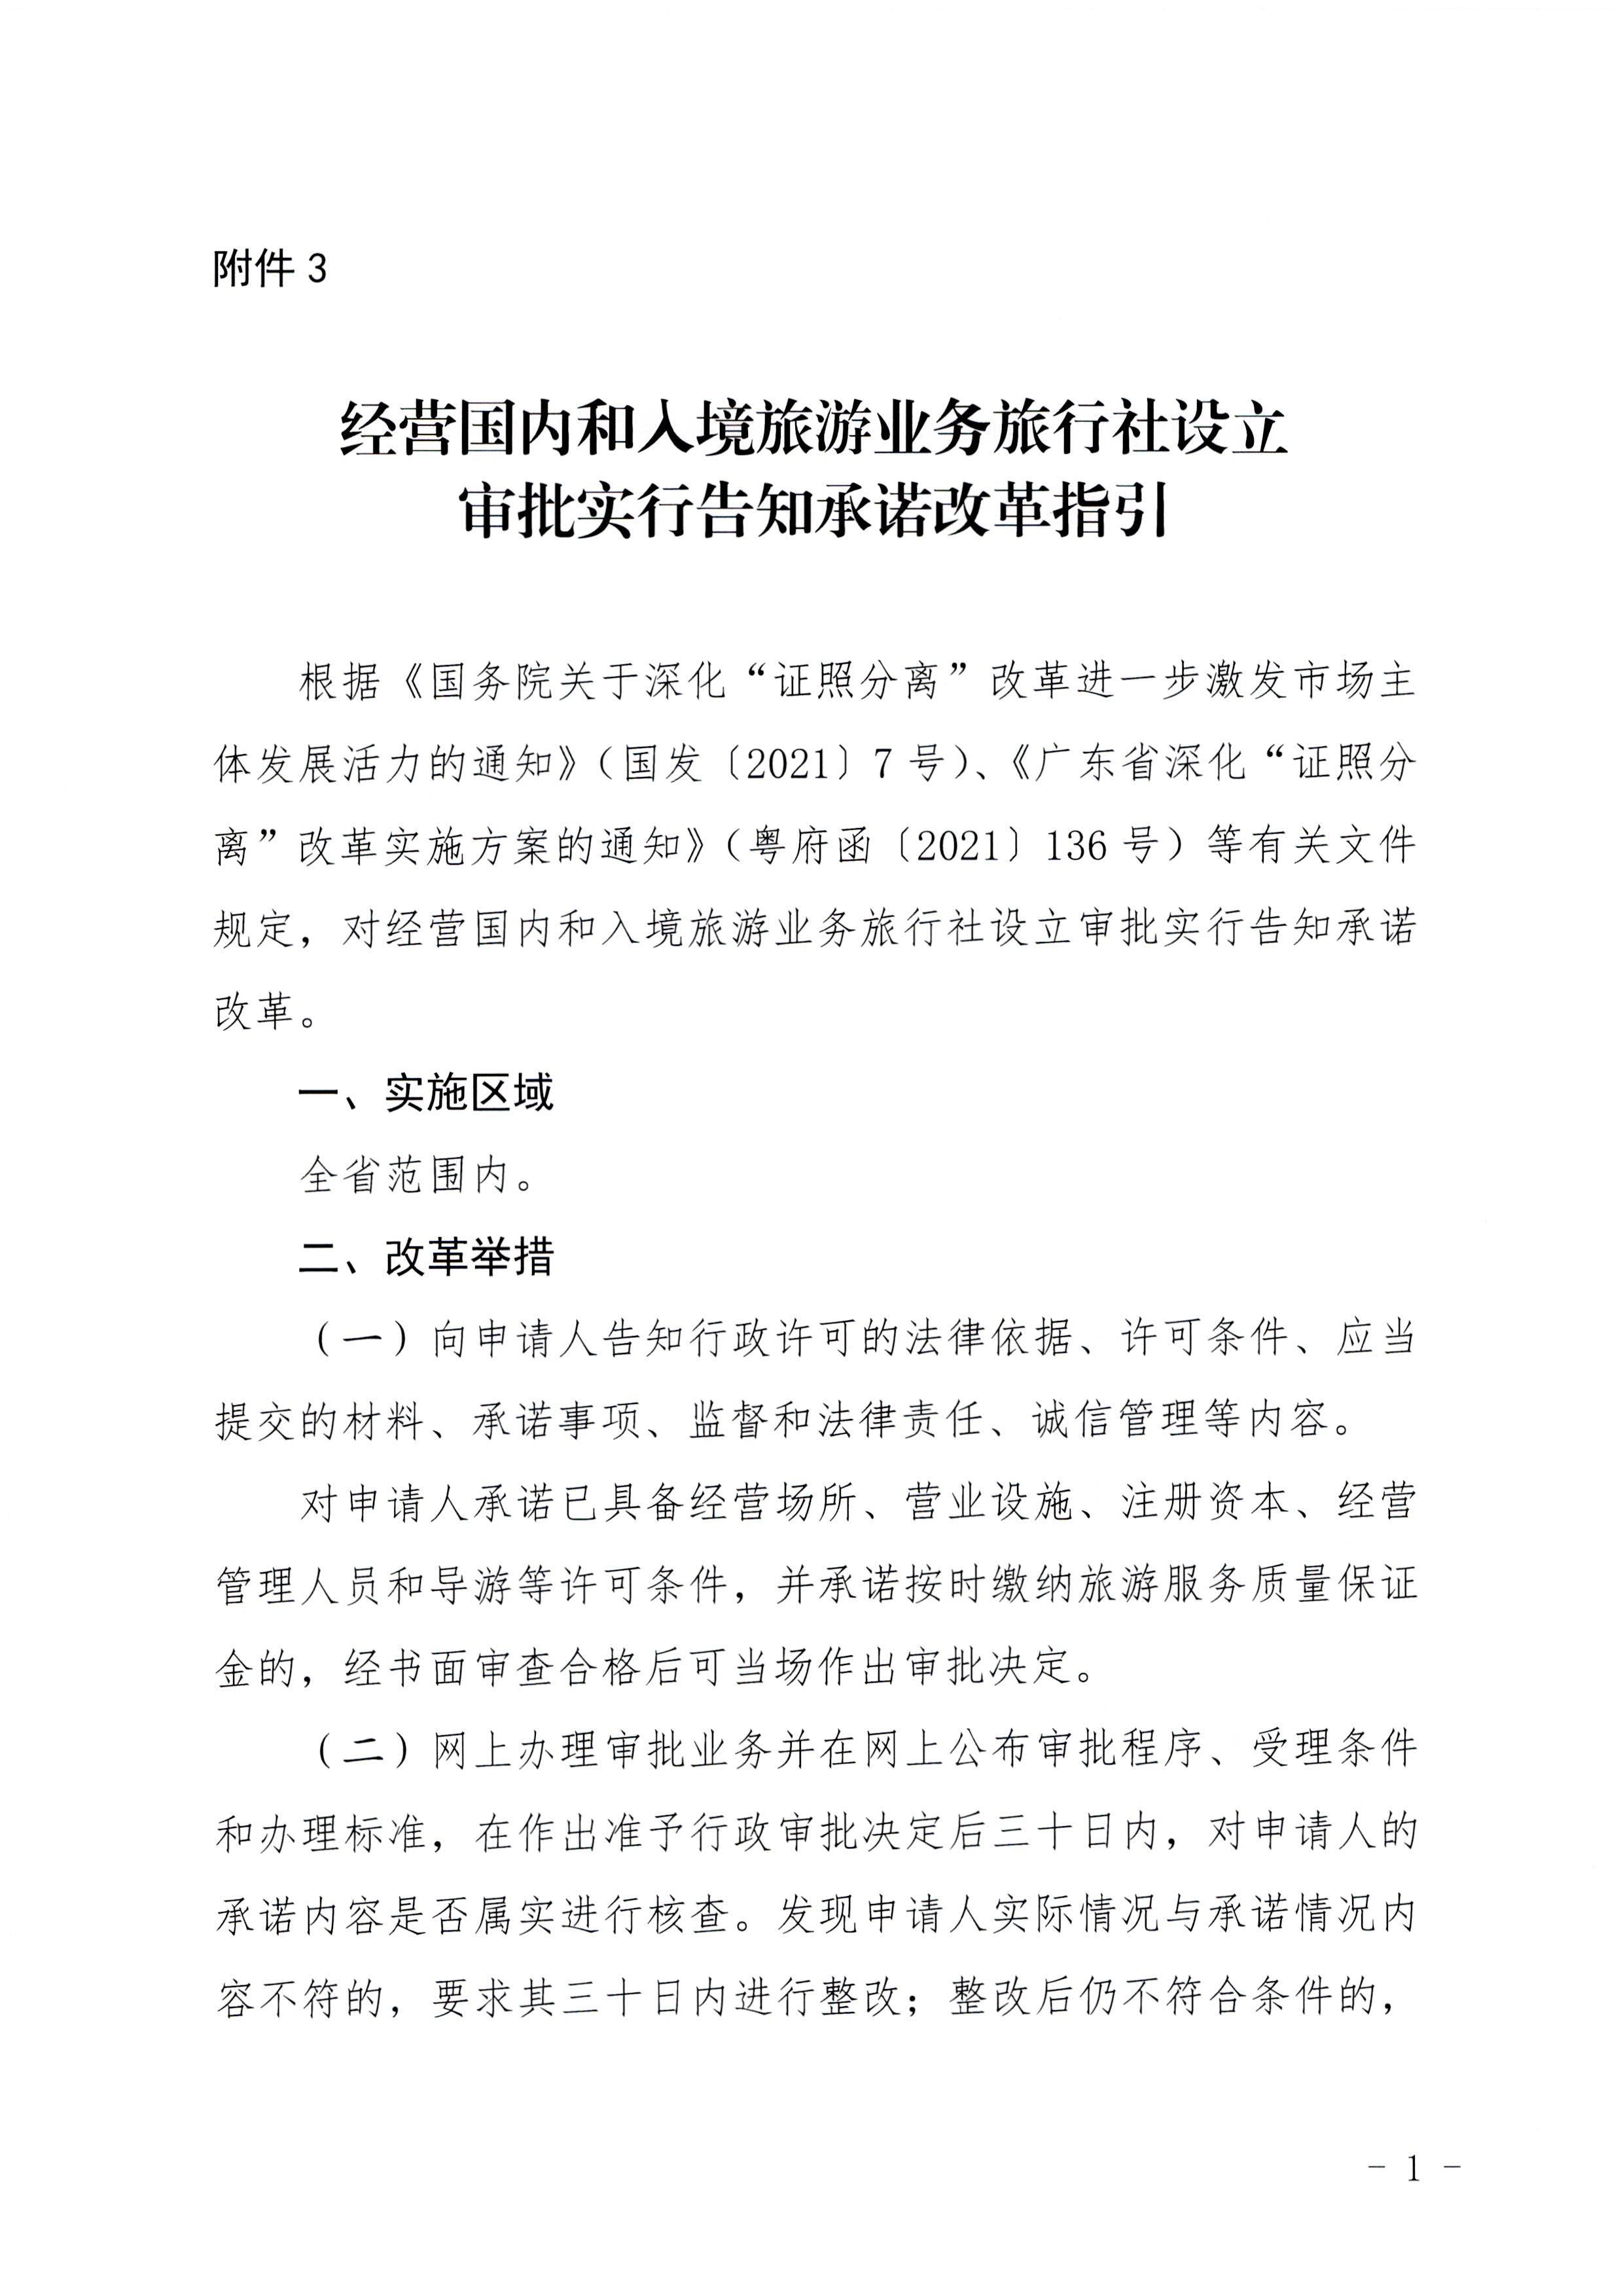 广东省文化和旅游厅印发证照分离改革实施方案的通知_页面_37.jpg